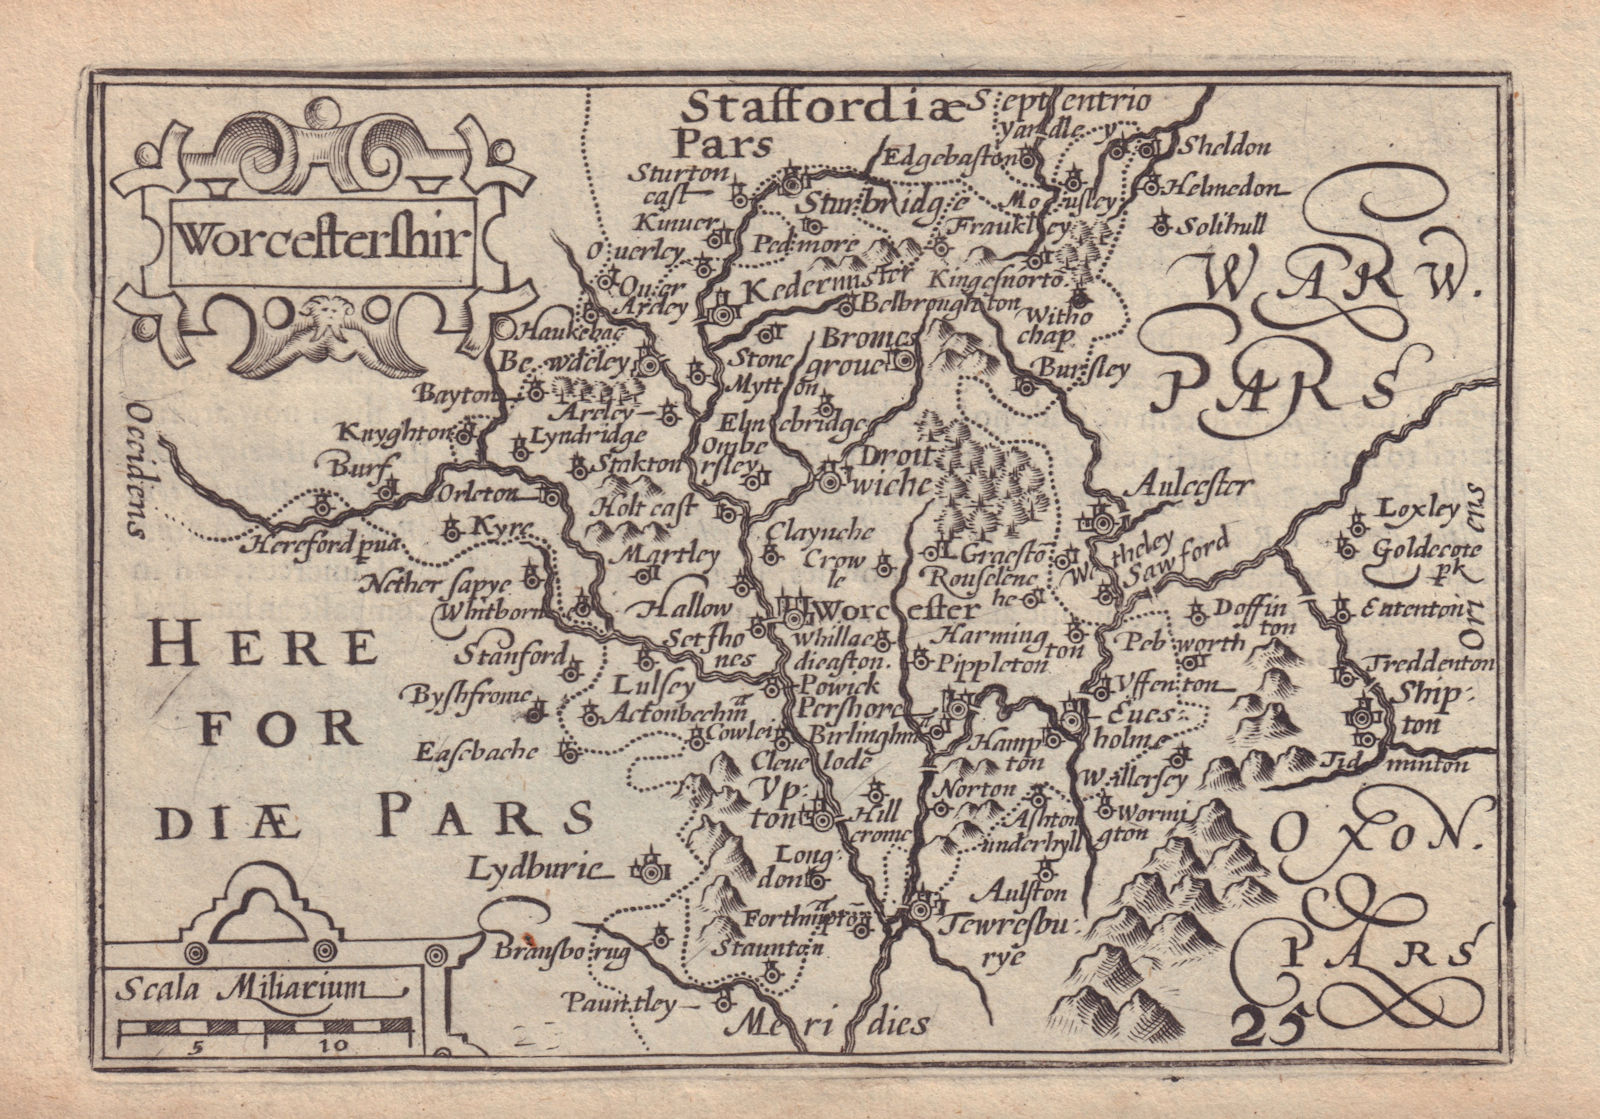 Worcestershir by van den Keere. "Speed miniature" Worcestershire county map 1632